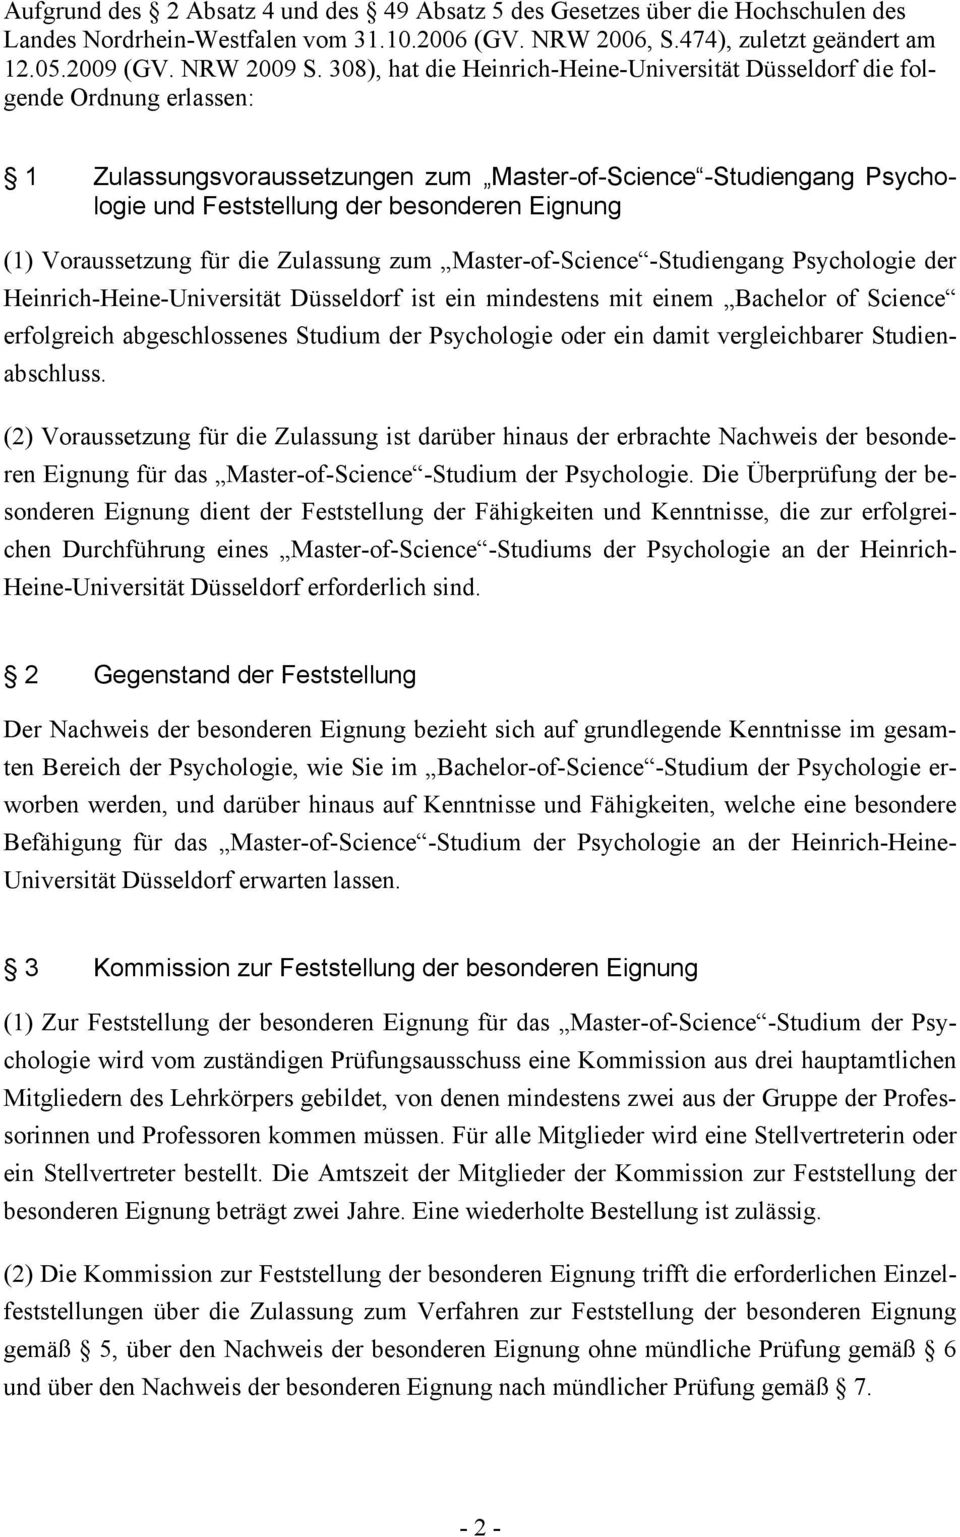 (1) Voraussetzung für die Zulassung zum Master-of-Science -Studiengang Psychologie der Heinrich-Heine-Universität Düsseldorf ist ein mindestens mit einem Bachelor of Science erfolgreich